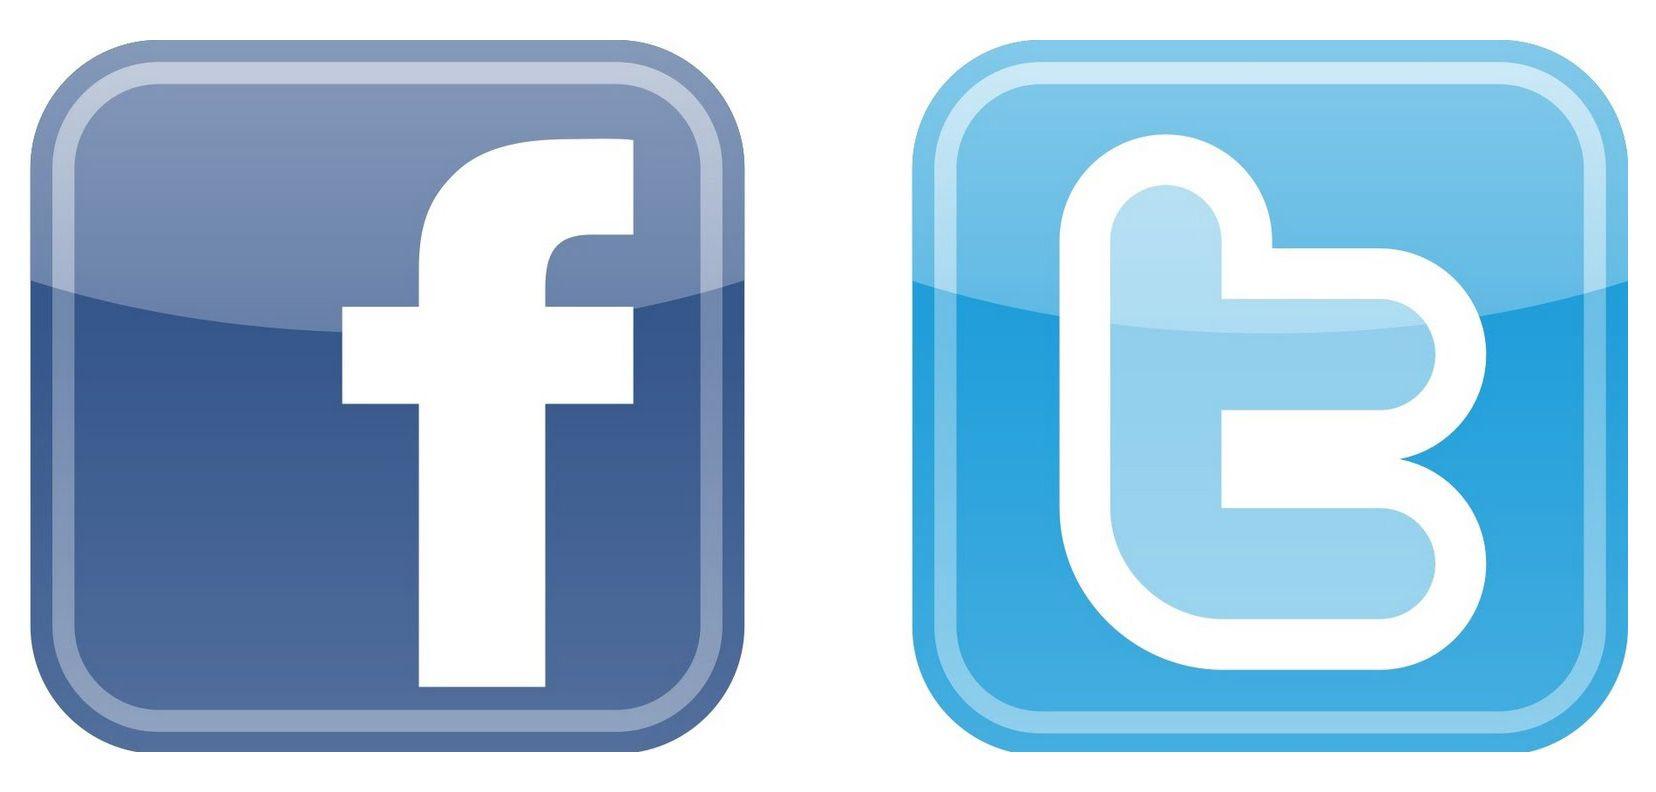 Fecabook Logo - Facebook Icon Vector Png Icon Library